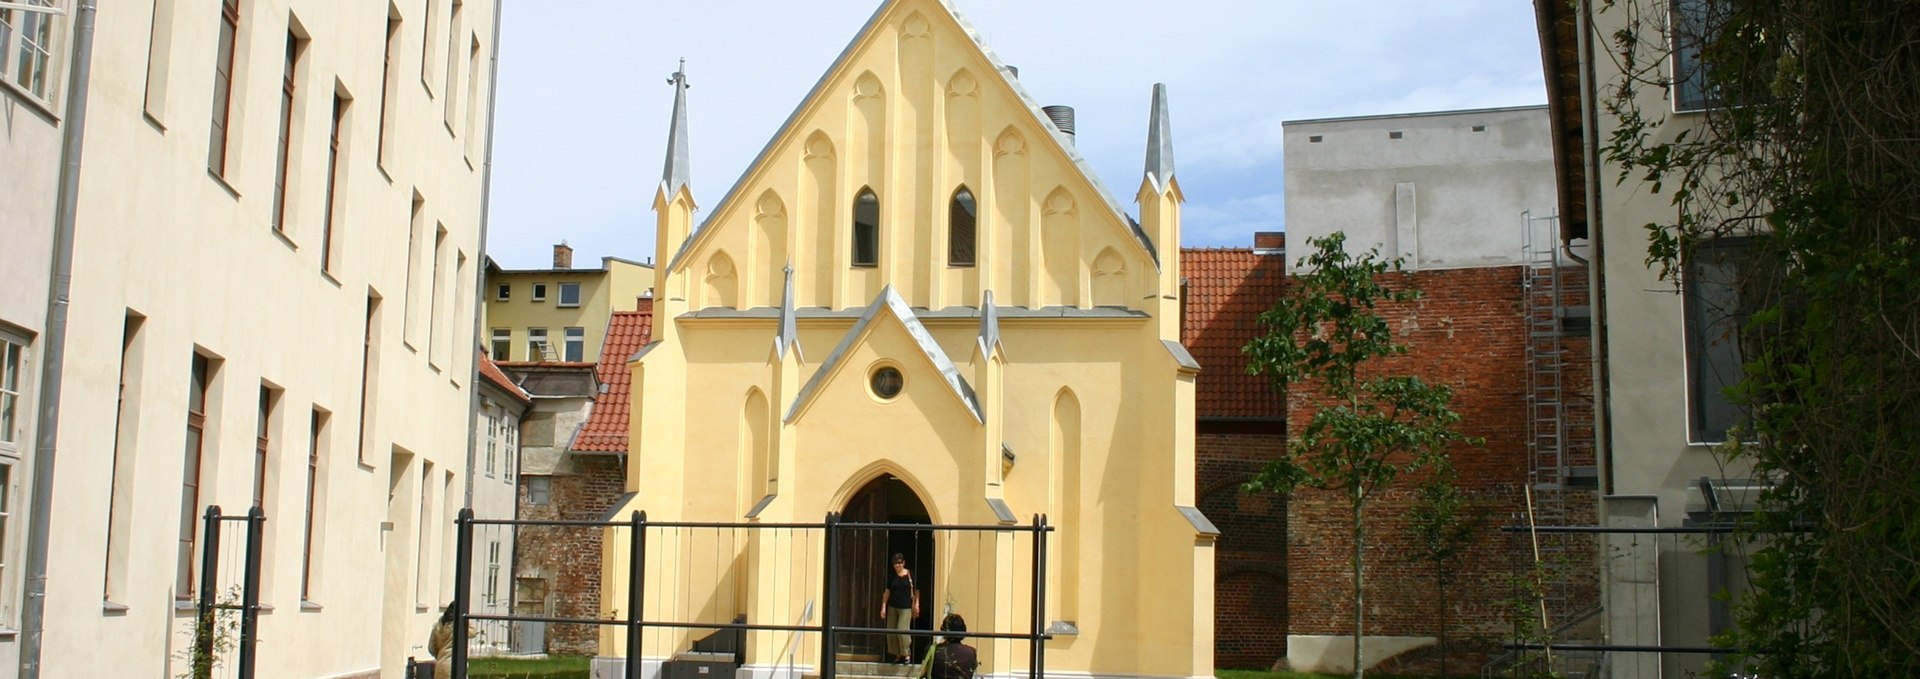 Monastery of St. Anne Brigitten, © Tourismuszentrale Stralsund